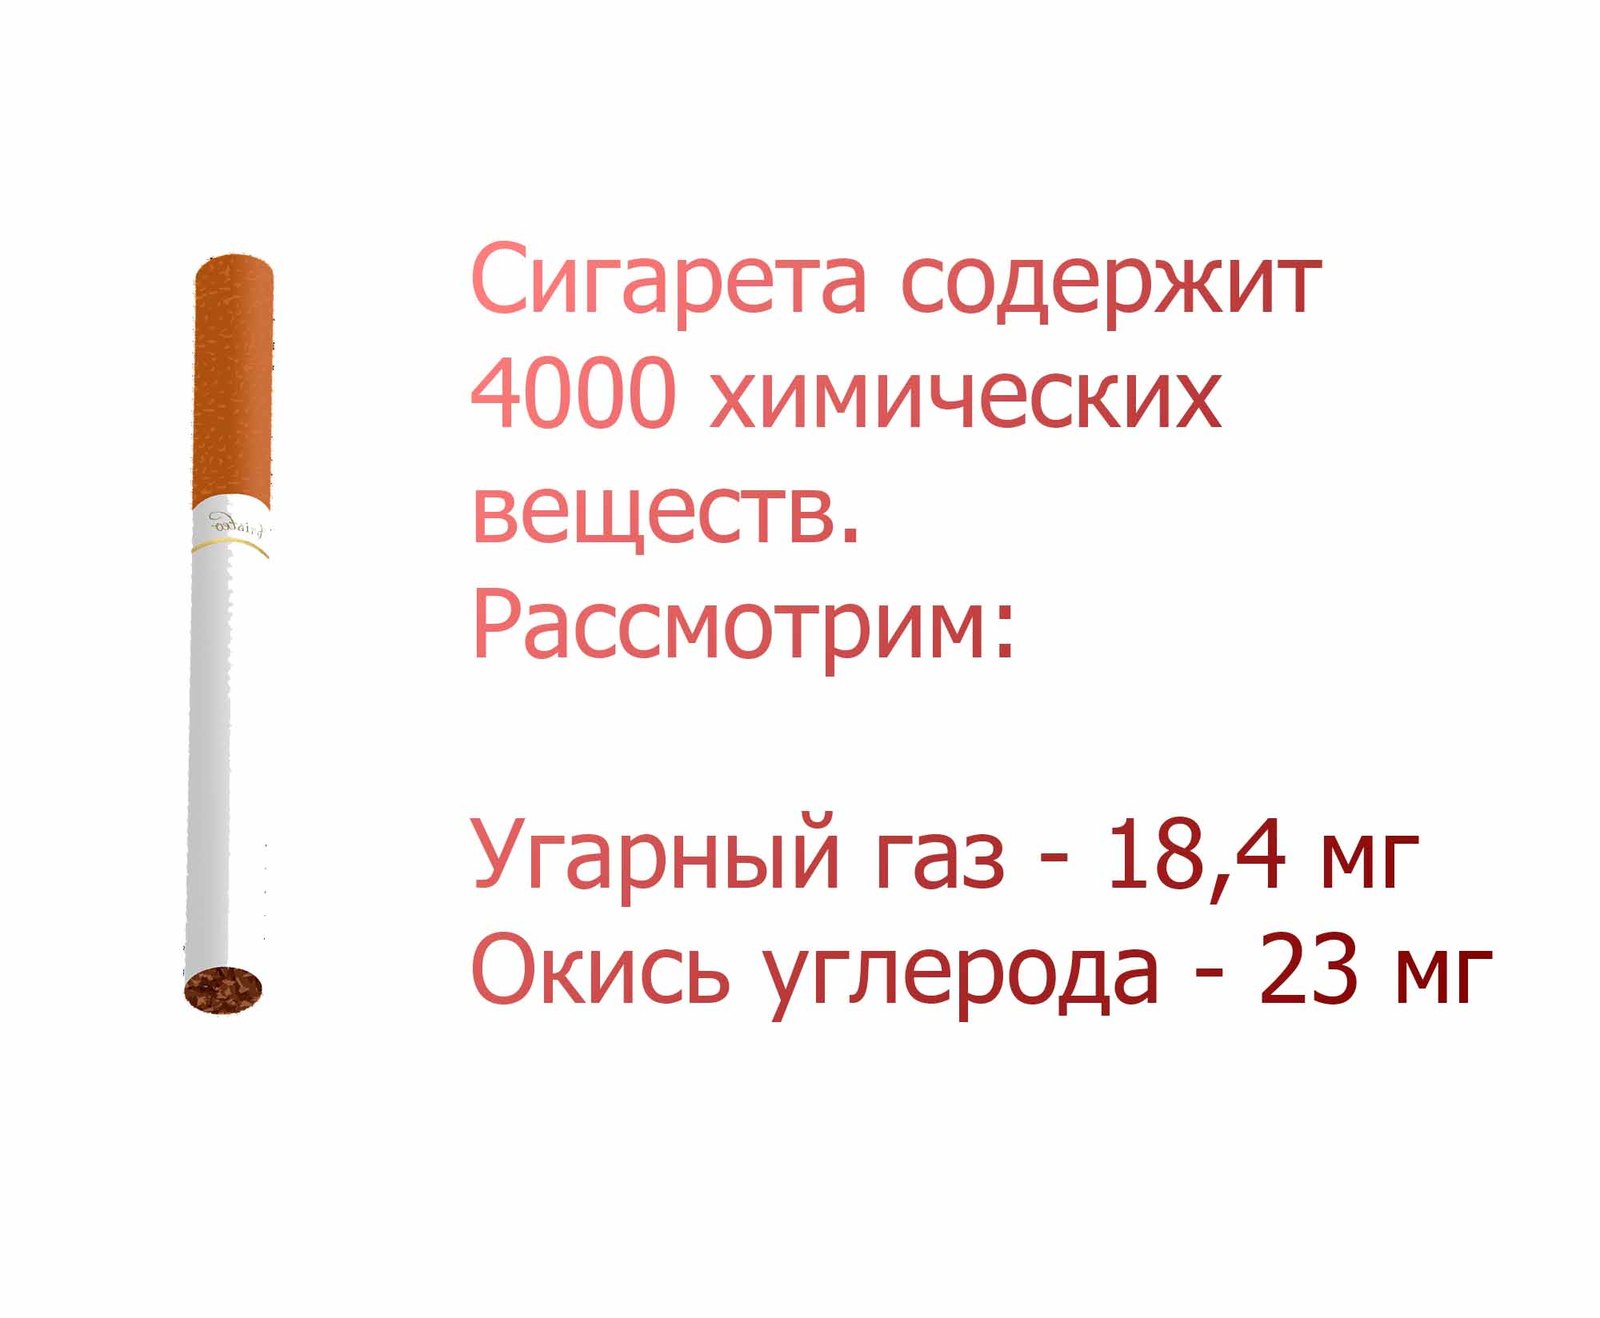 Купить сигареты круглосуточно